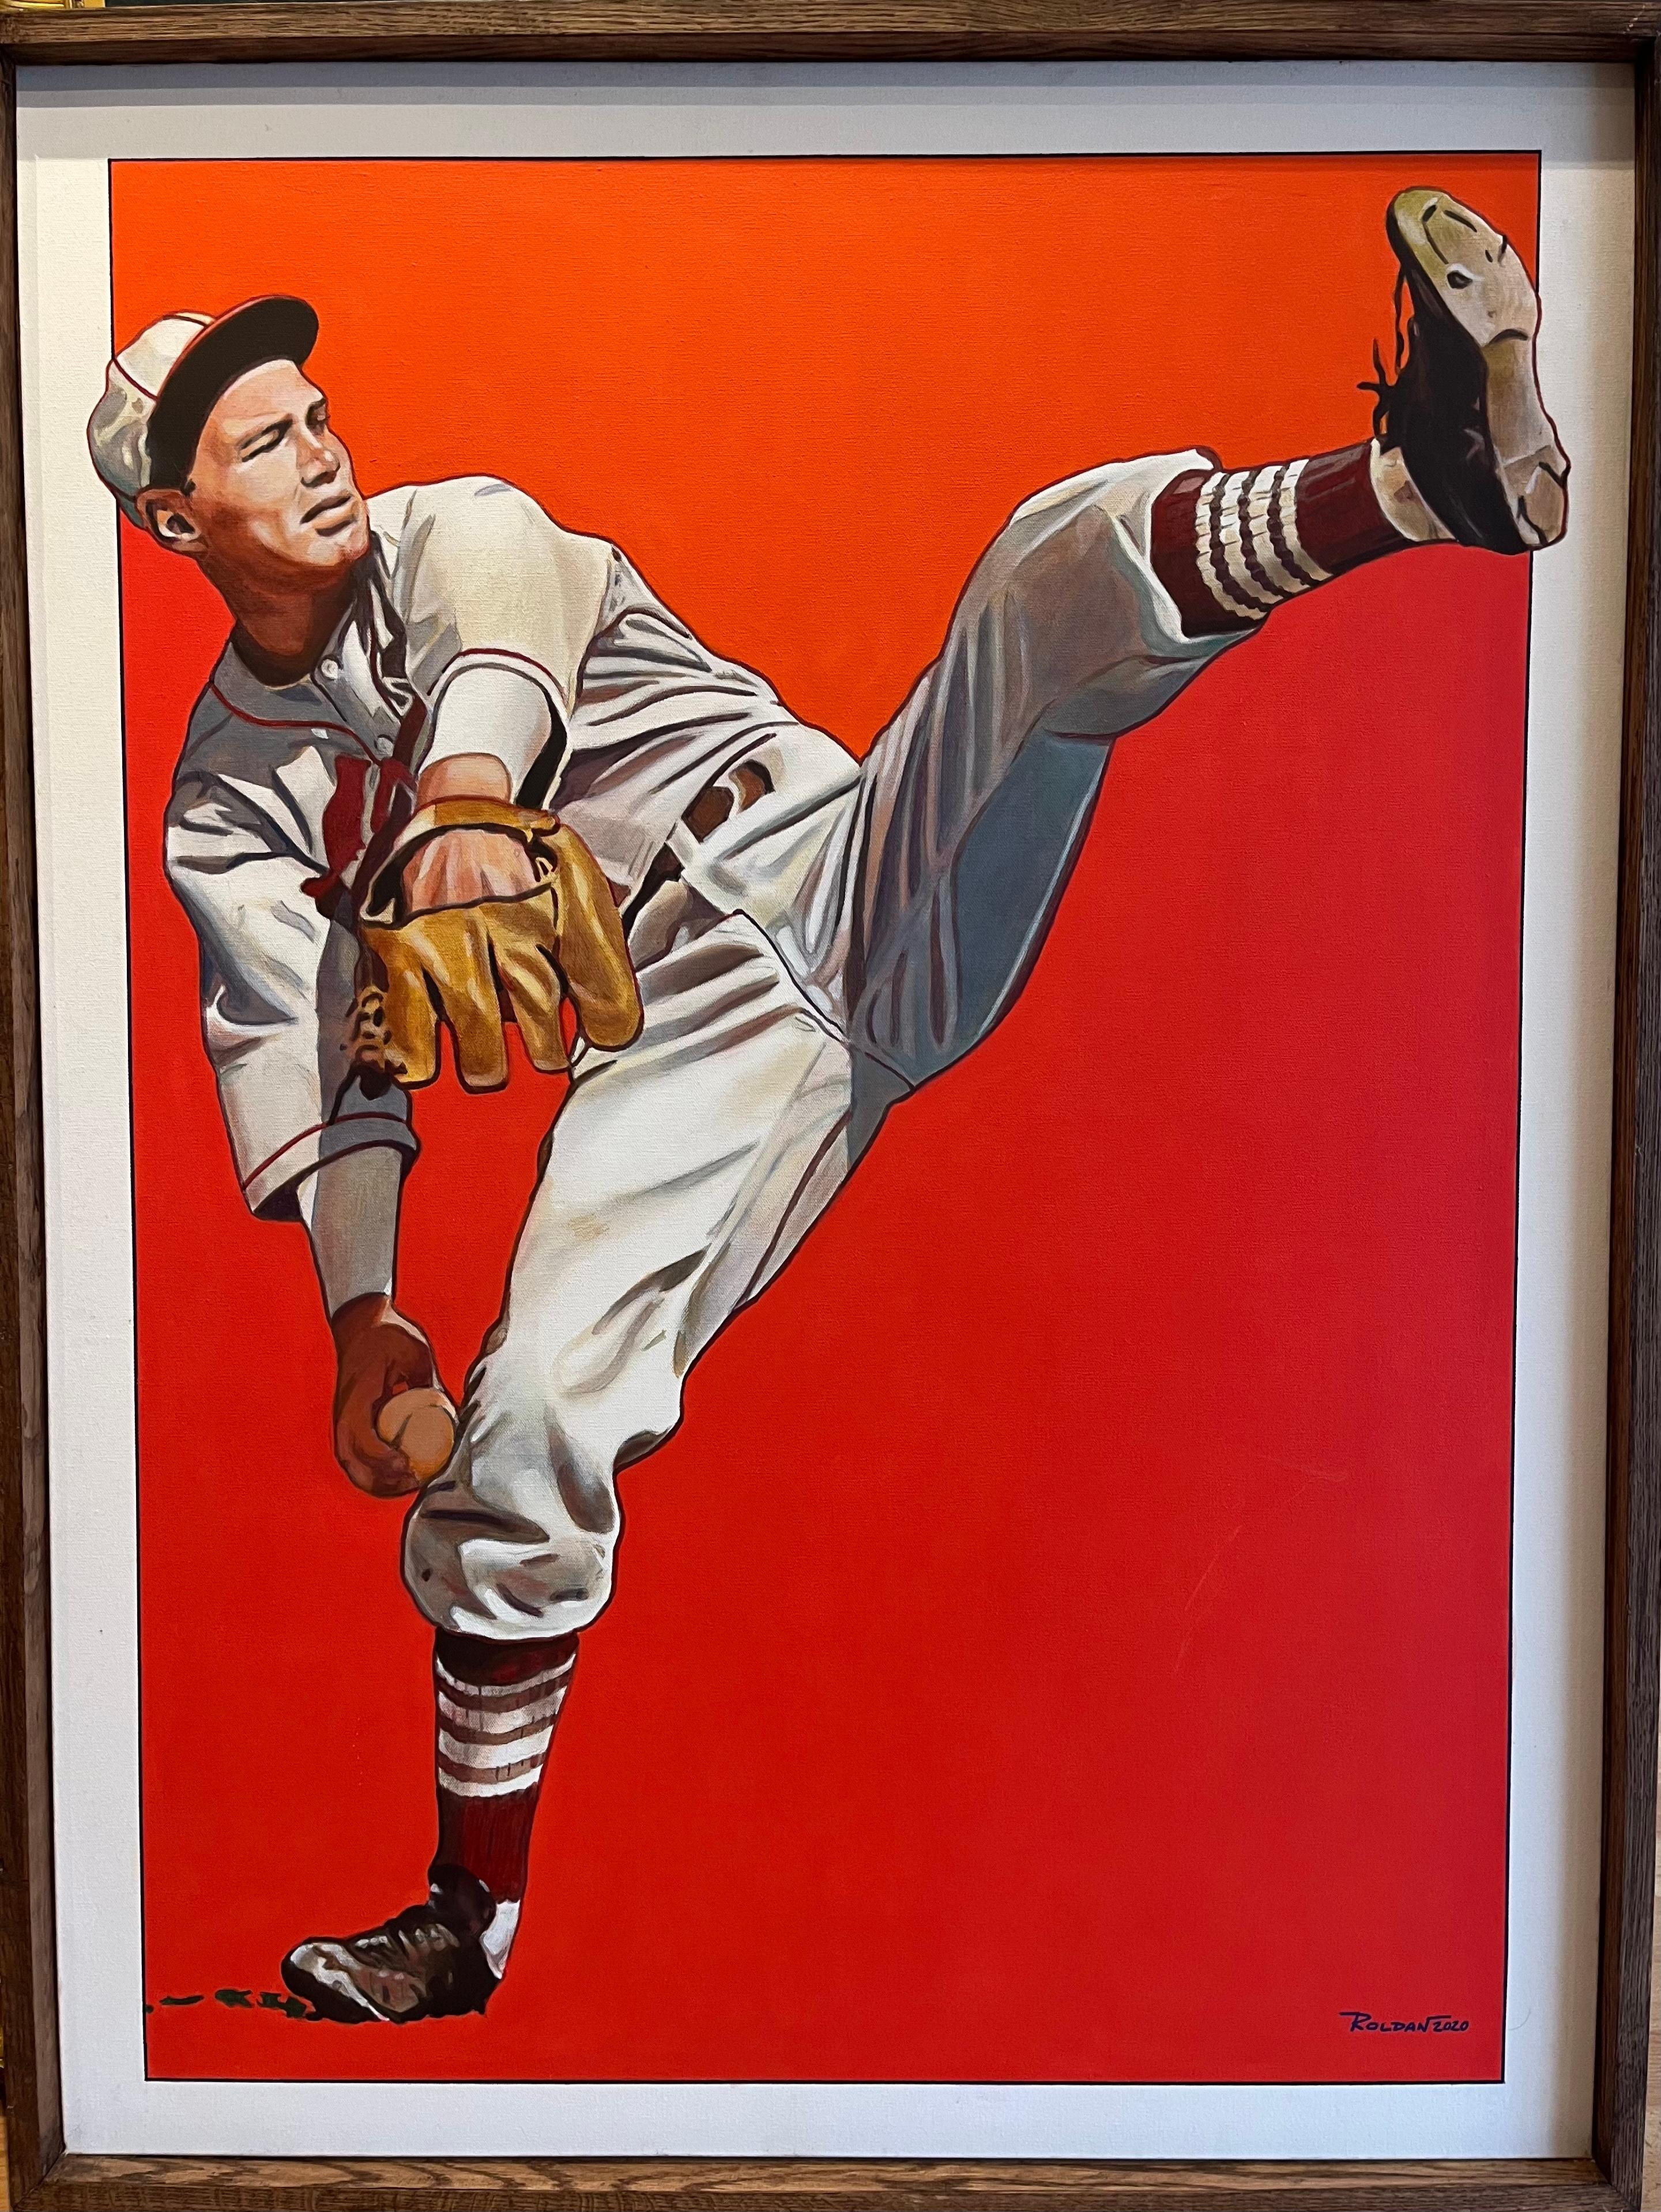 Jose Roldan Rendon Portrait Painting - Baseball Player Portrait titled "Golden Age"